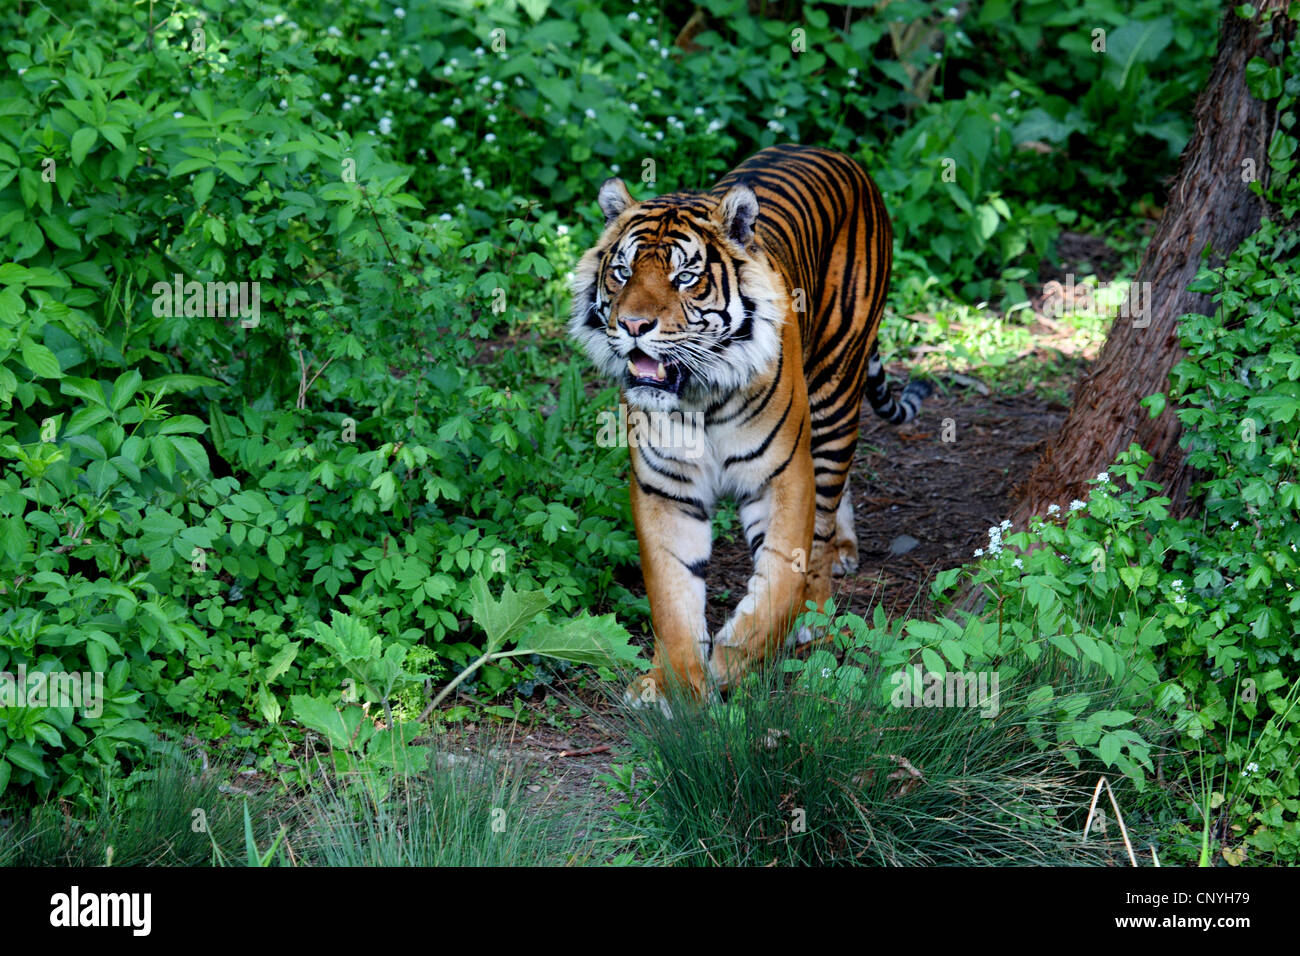 Sumatran tiger (Panthera tigris sumatrae), in shrubbery Stock Photo